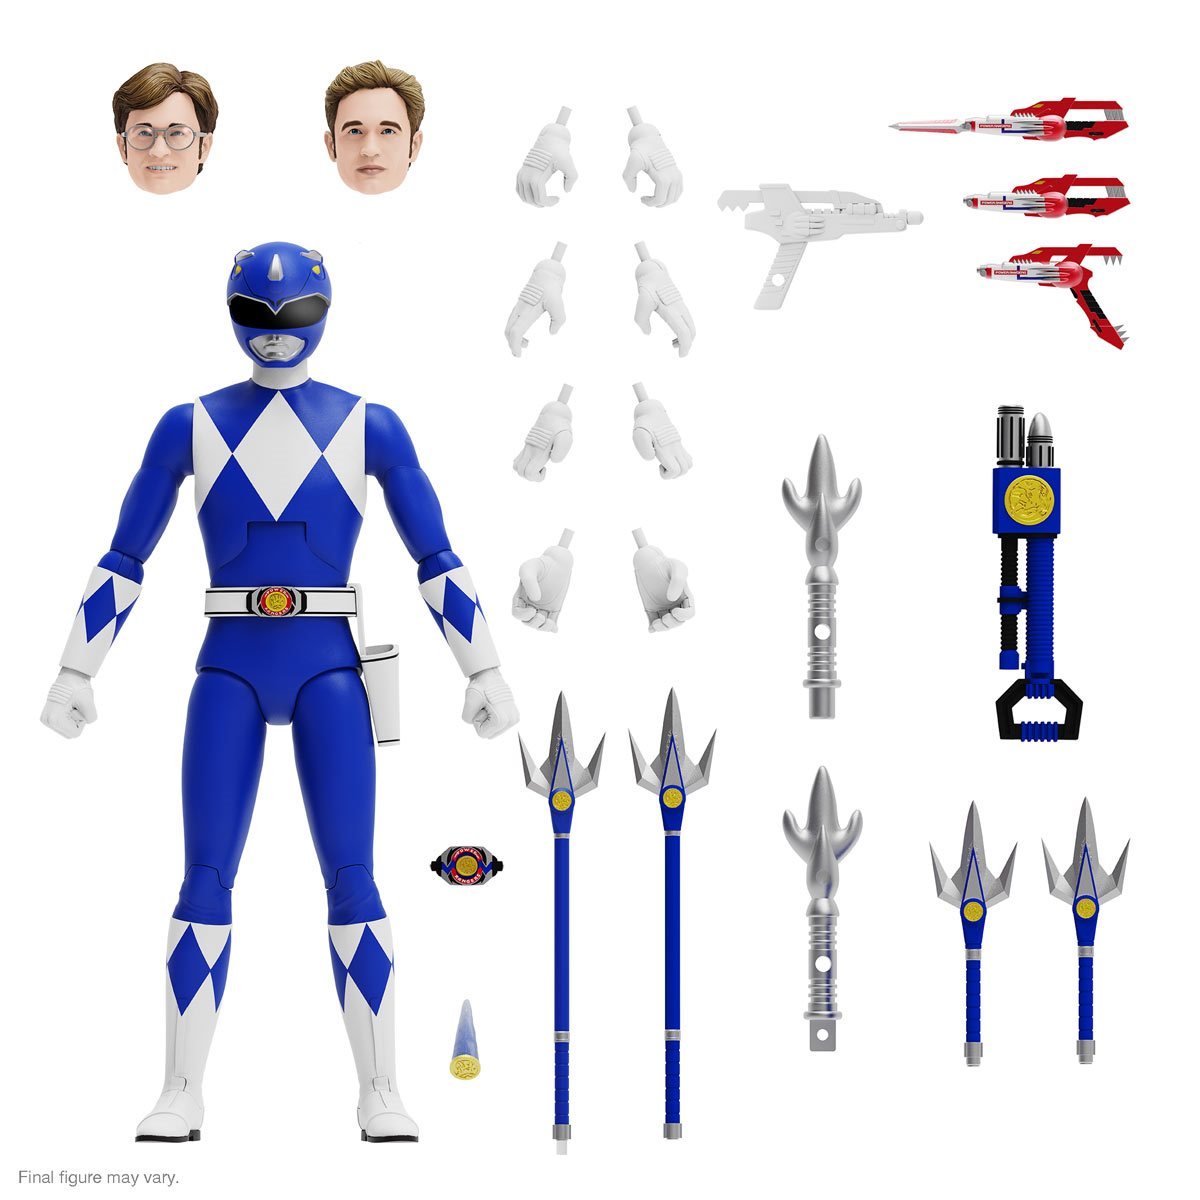 Blue Ranger Super7 Power Rangers ULTIMATES!